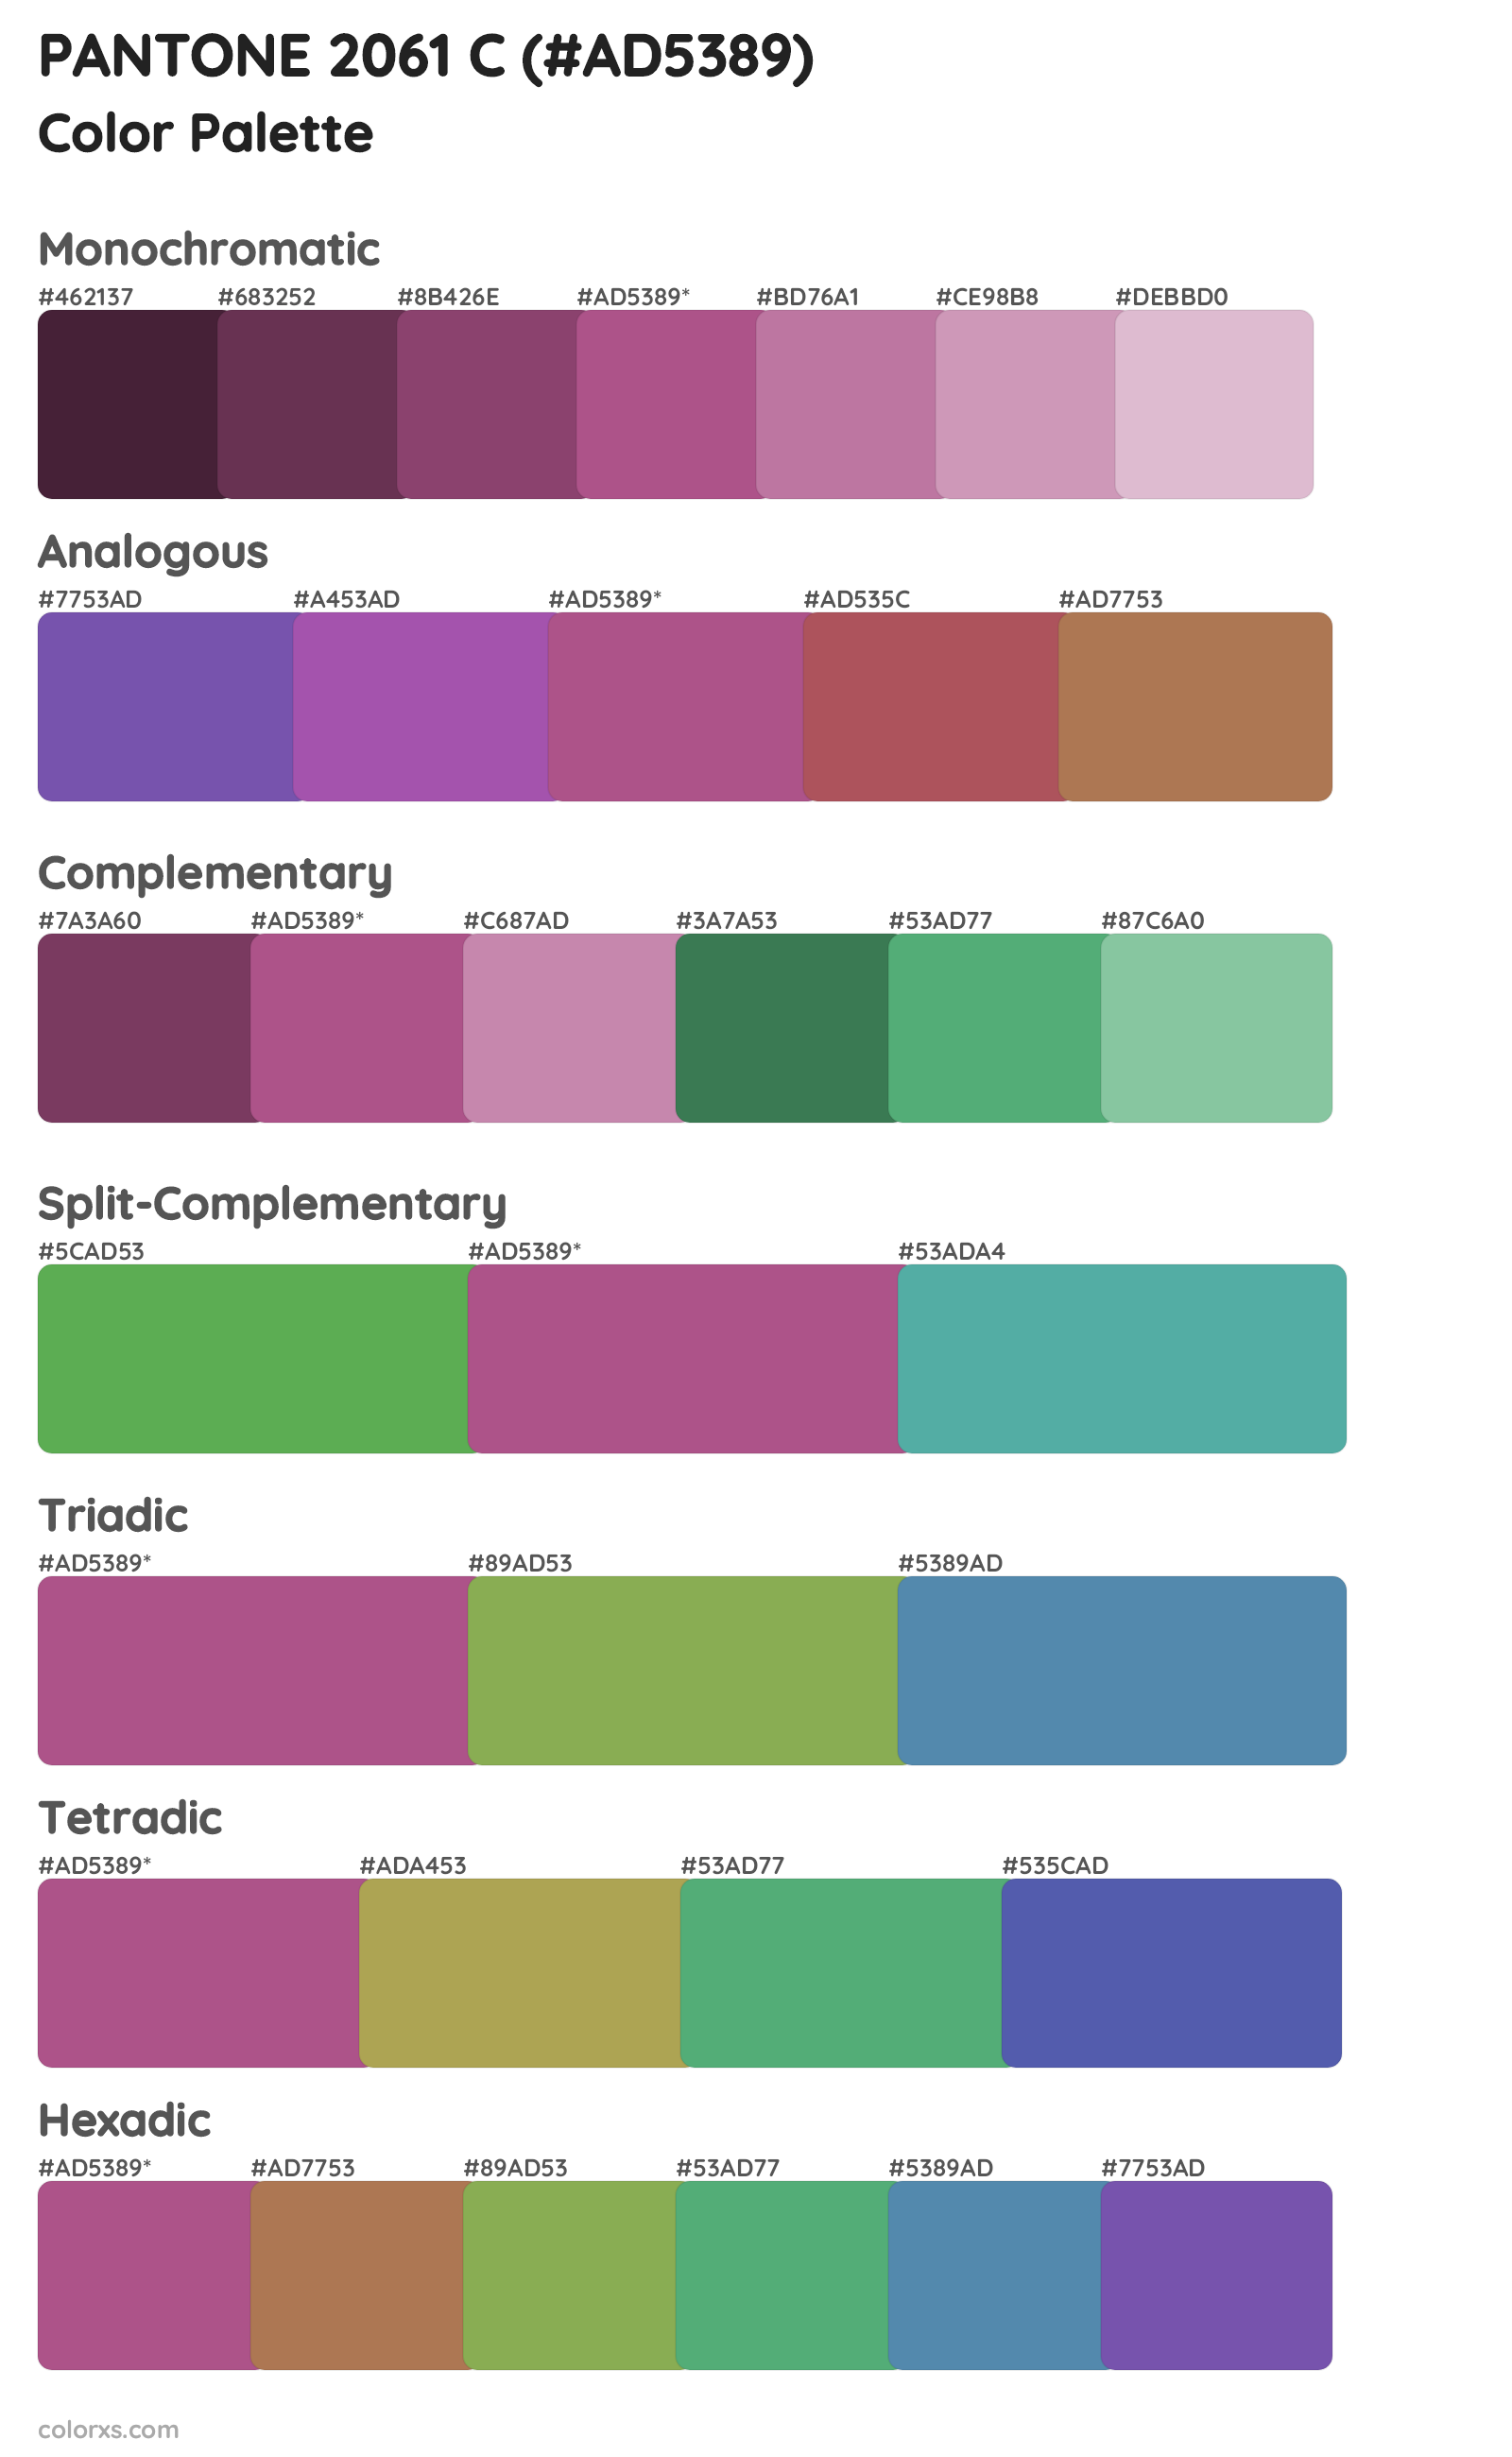 PANTONE 2061 C Color Scheme Palettes